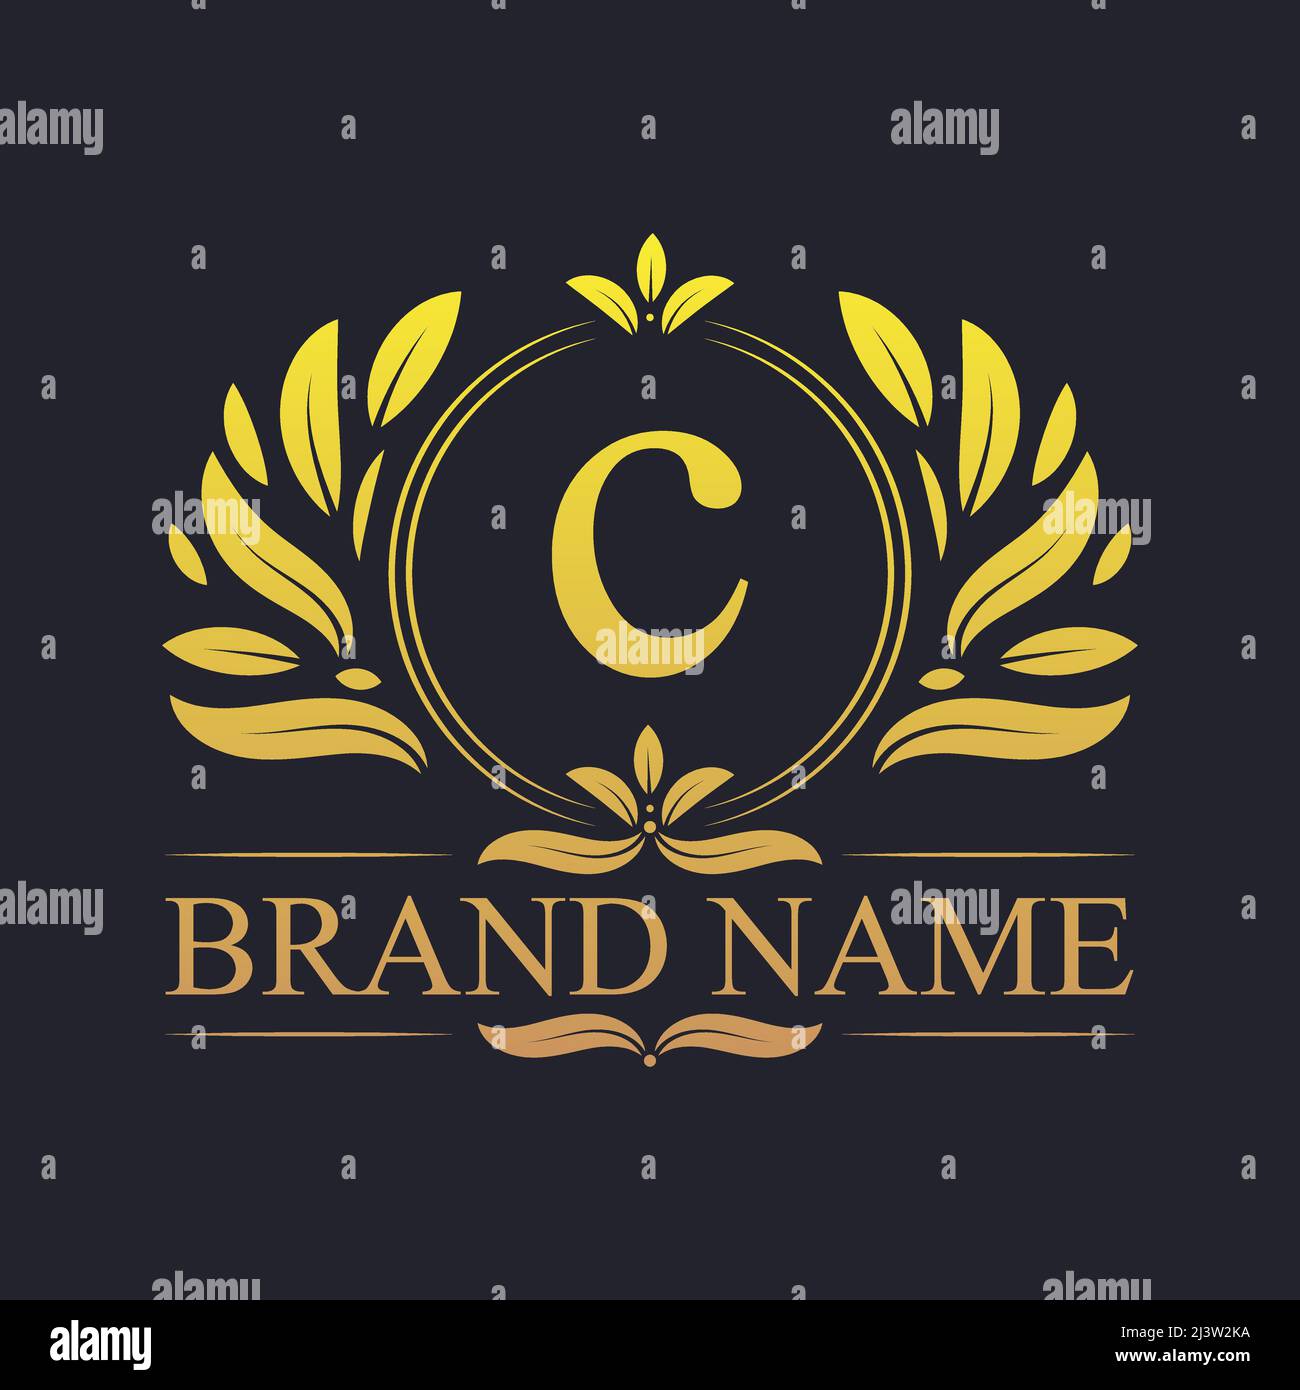 Diseño de logotipo en C del alfabeto ornamental vintage dorado. Lujosa plantilla con el logotipo de la elegante letra C dorada. Ilustración del Vector